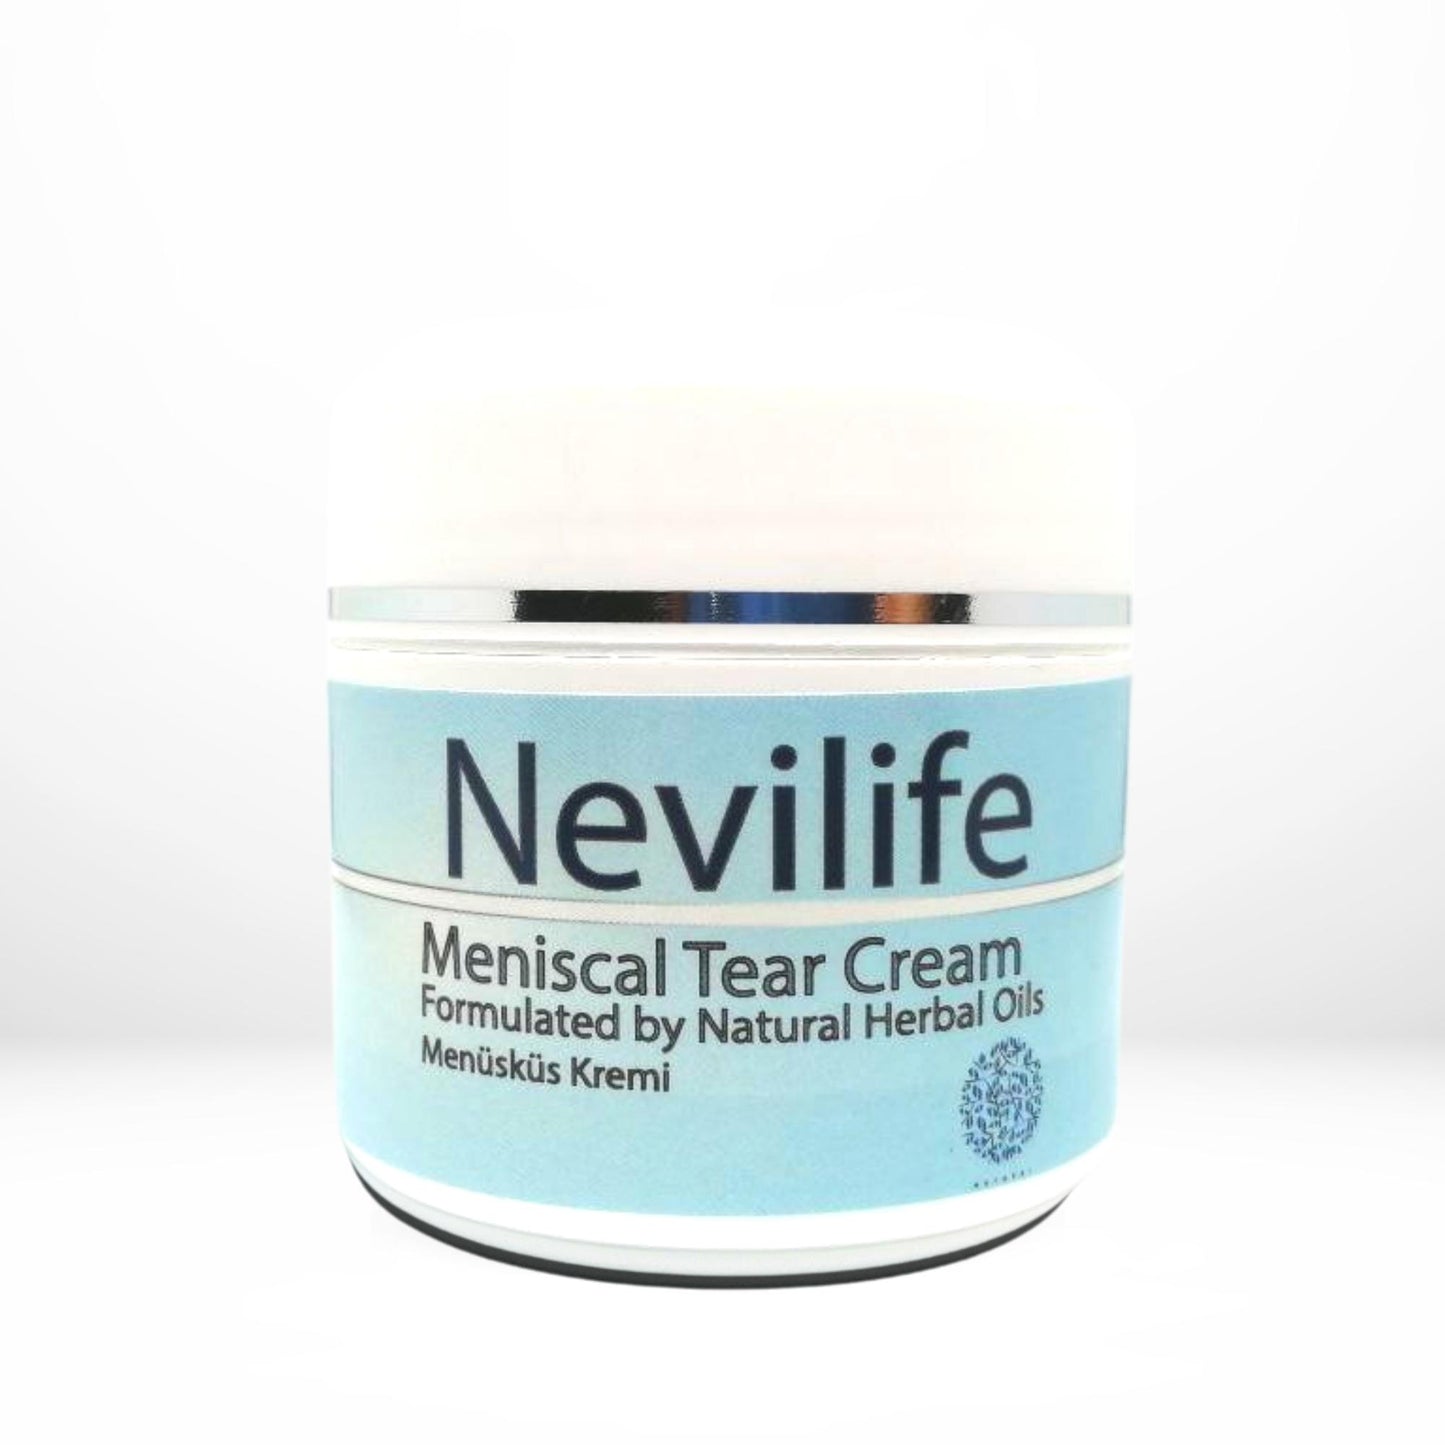 Nevilife Meniscal Tear Cream